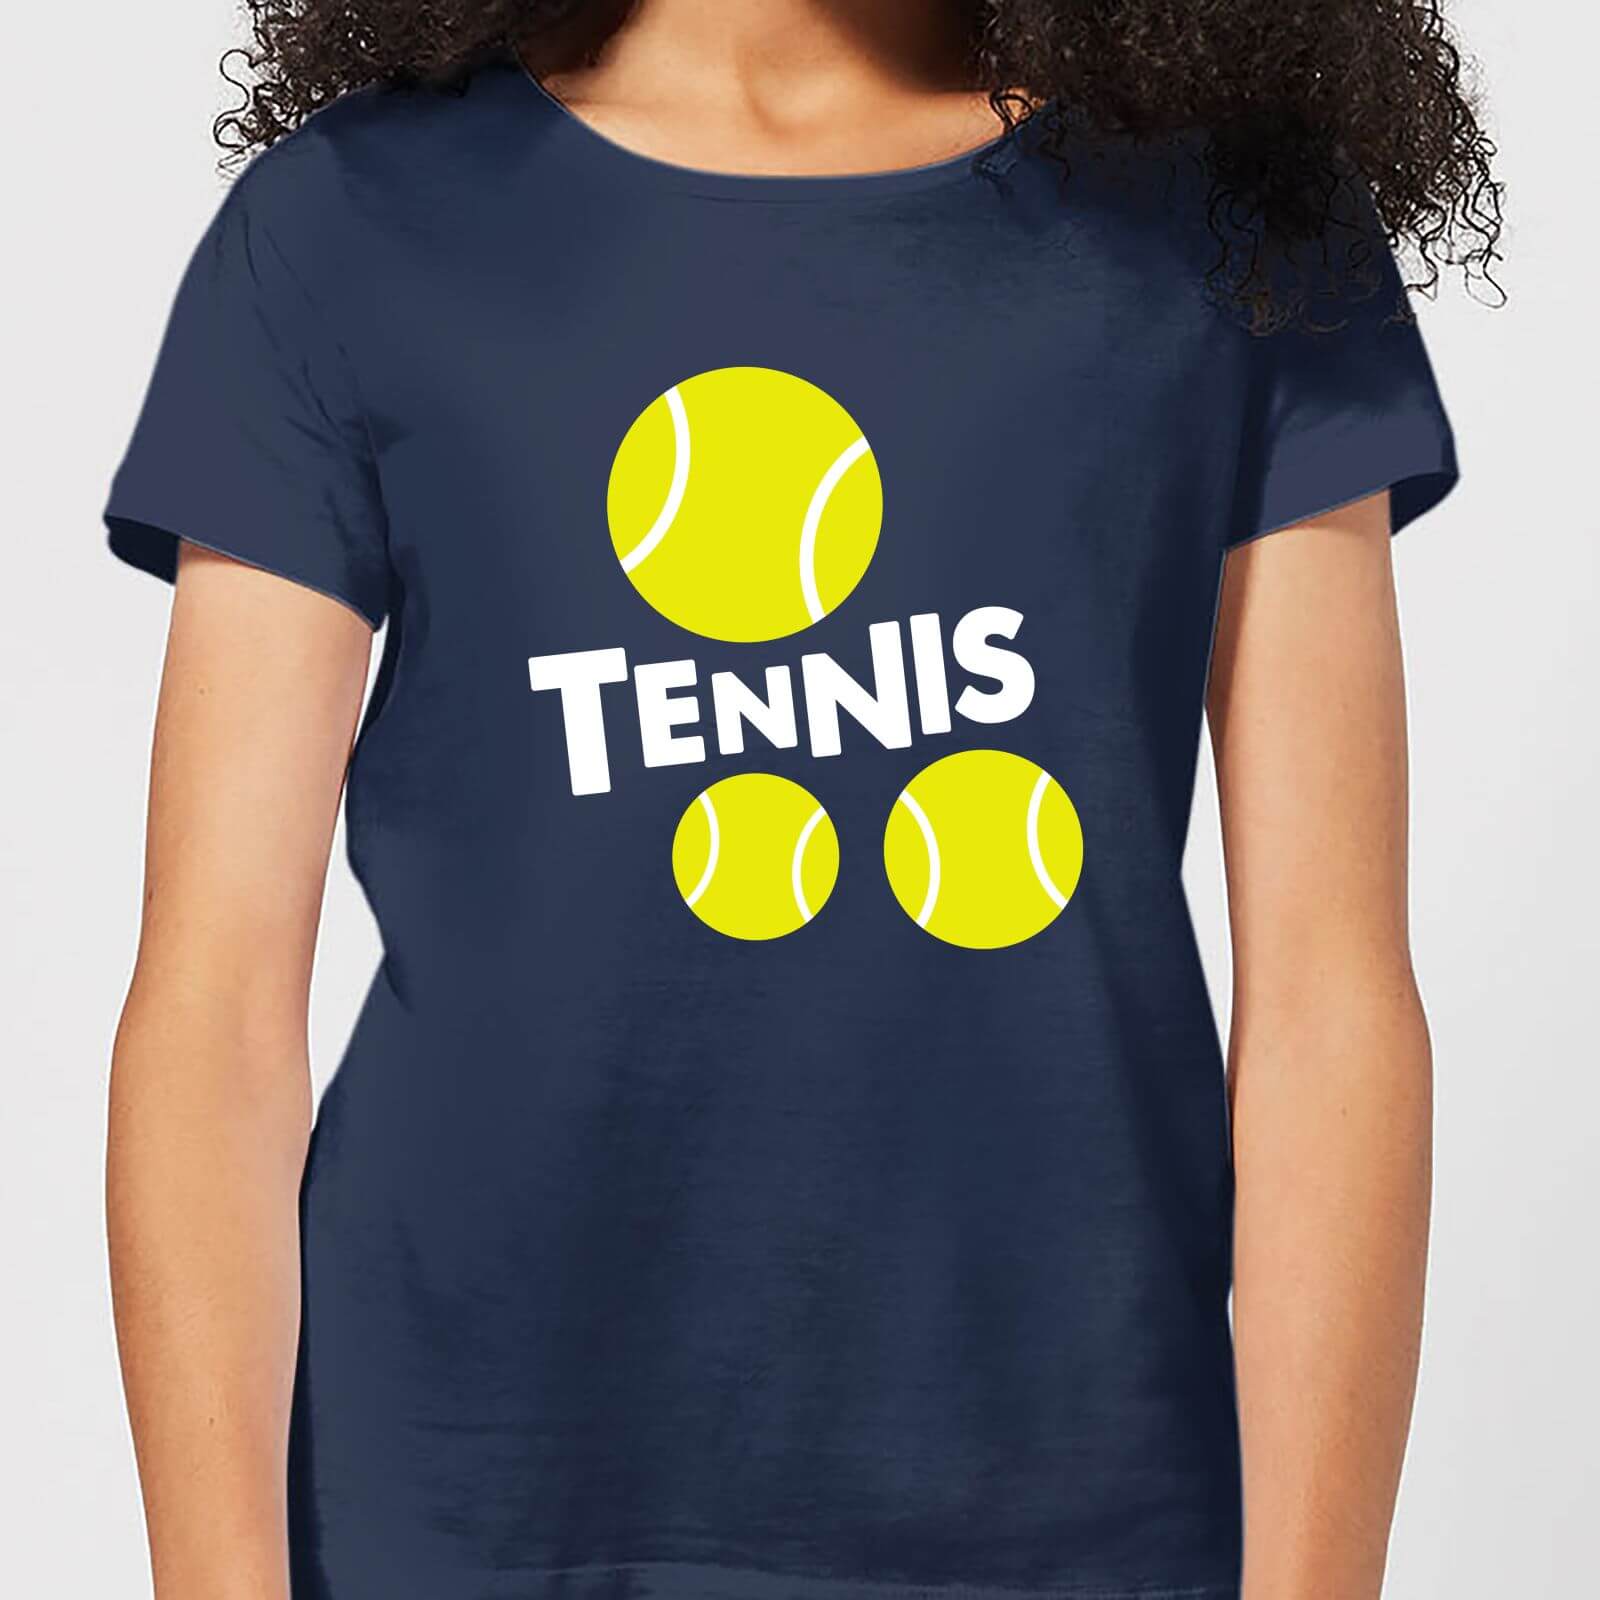 Tennis Balls Womens T-Shirt - Navy - XXL - Navy